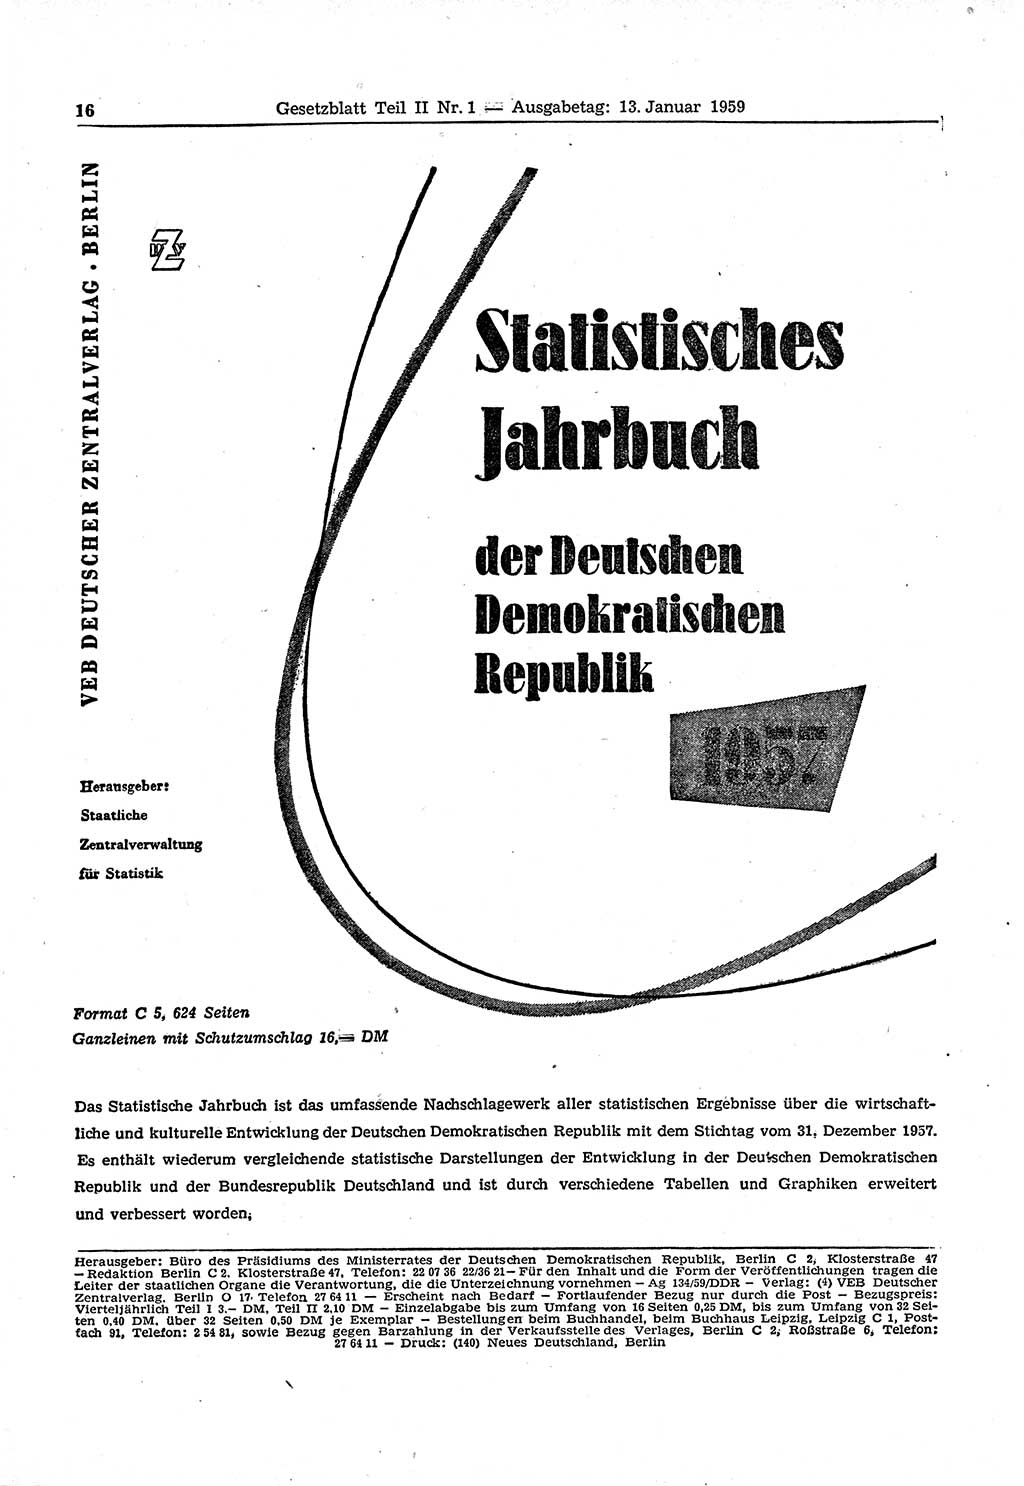 Gesetzblatt (GBl.) der Deutschen Demokratischen Republik (DDR) Teil ⅠⅠ 1959, Seite 16 (GBl. DDR ⅠⅠ 1959, S. 16)